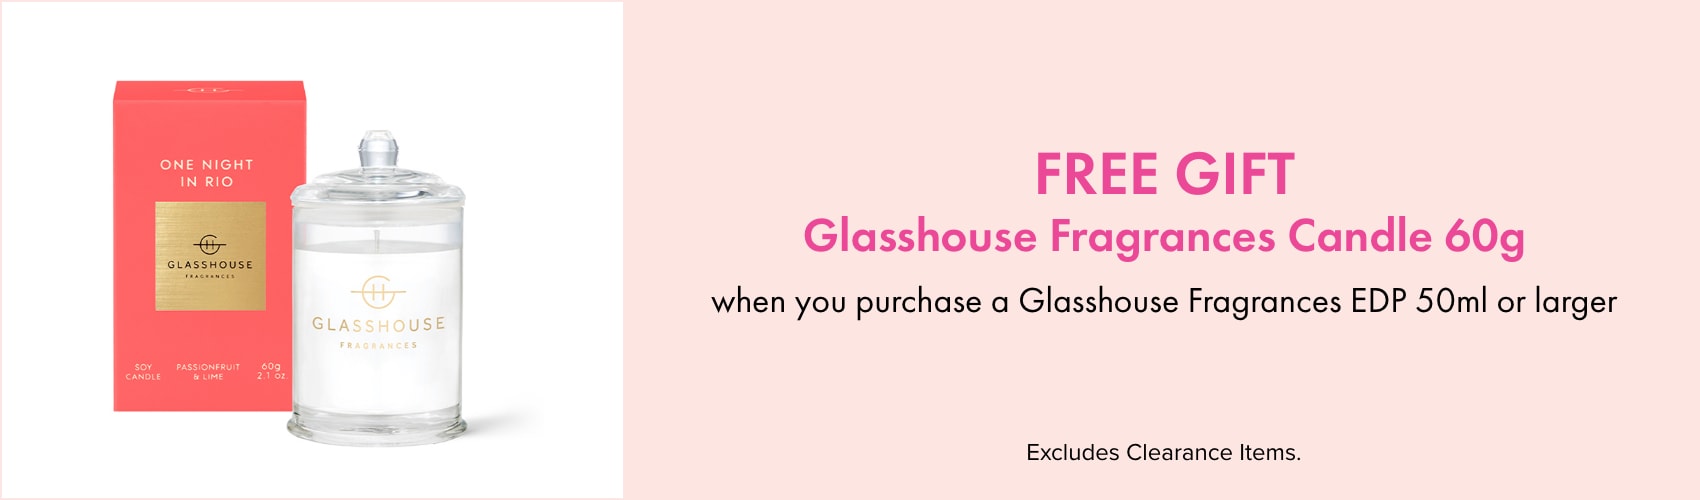 FREE GIFT Glasshouse Fragrances Candle 60g